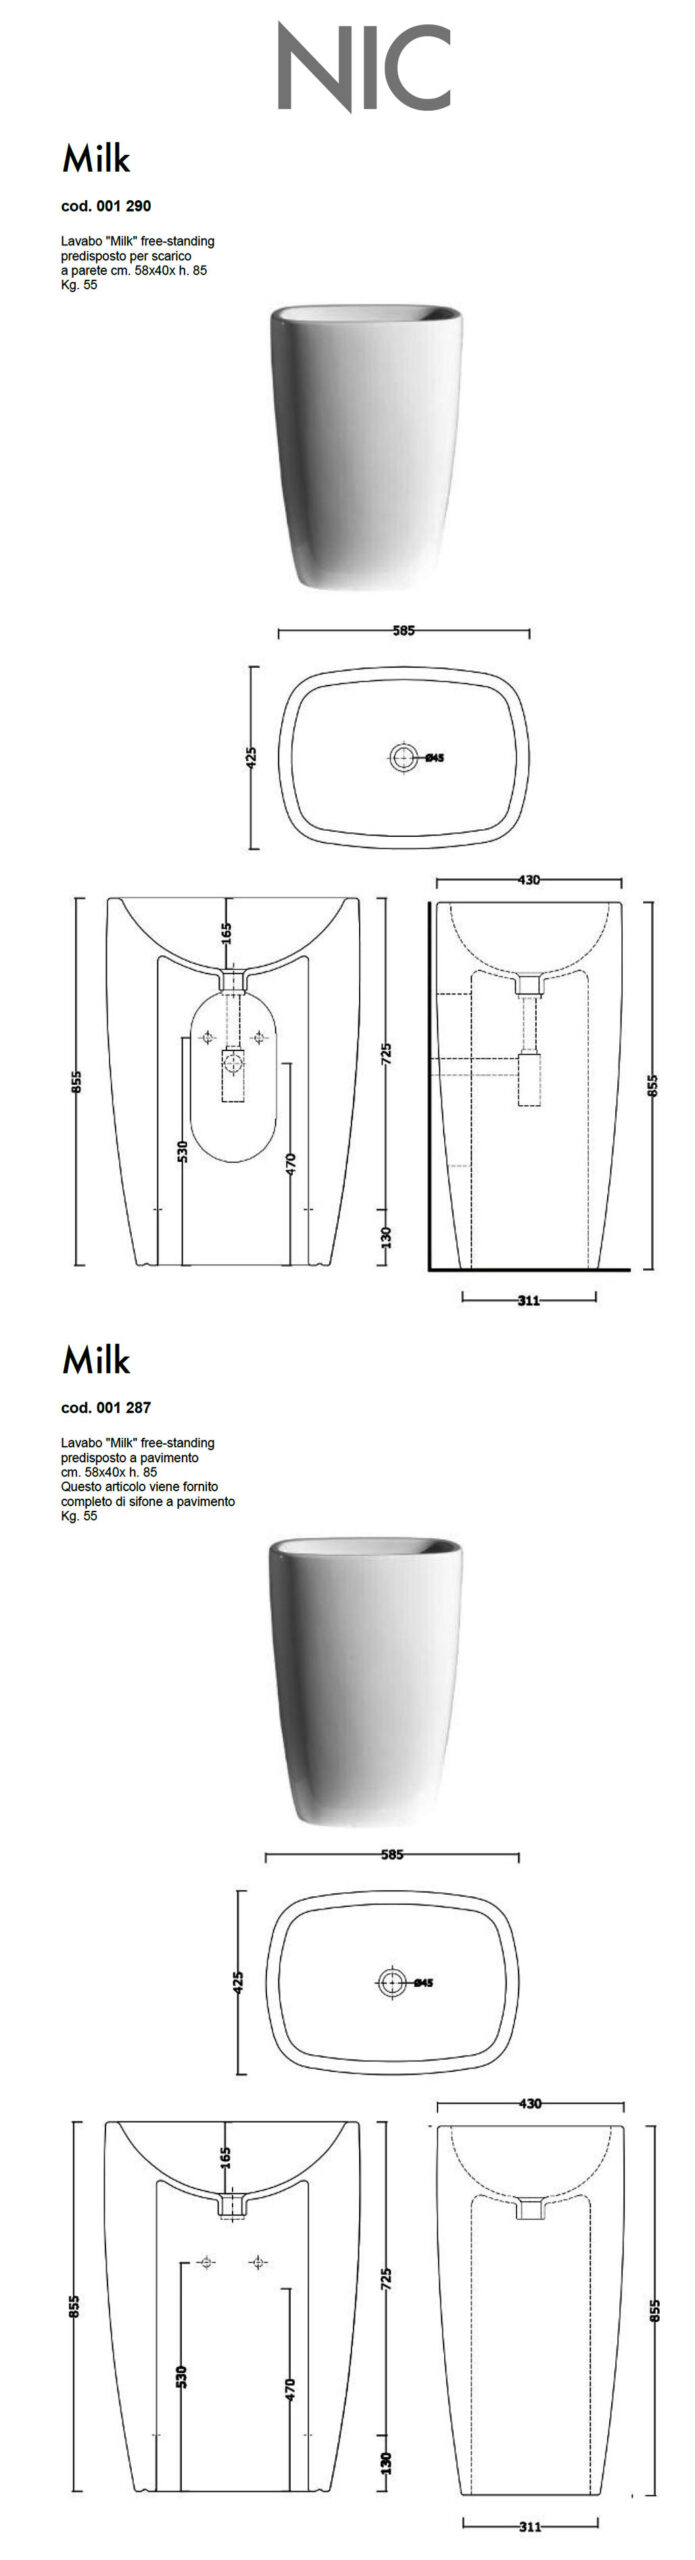 Technisches Datenblatt waschbecken free standing nic design milk